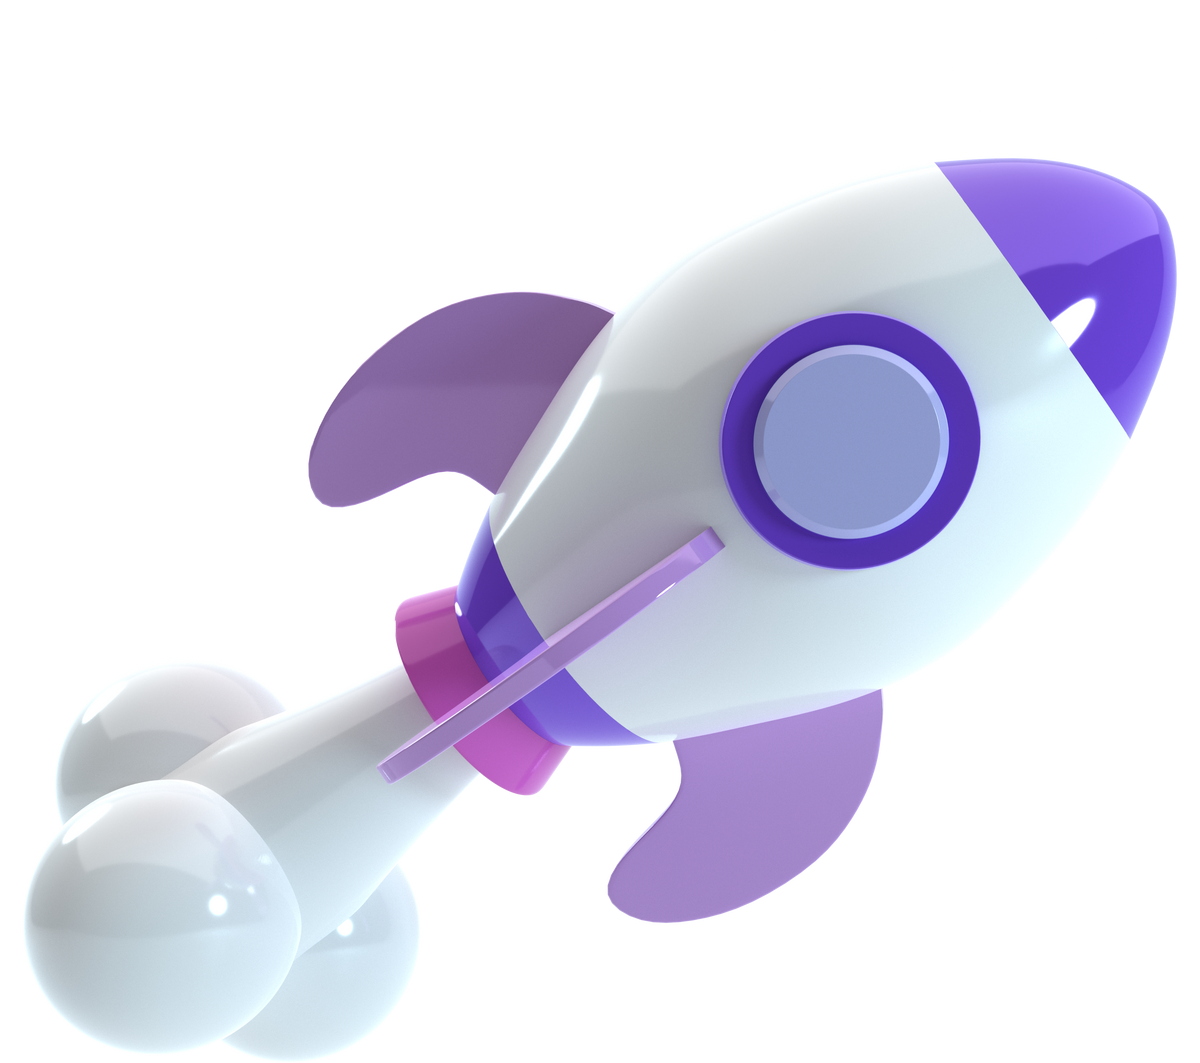 3d space rocket illustration